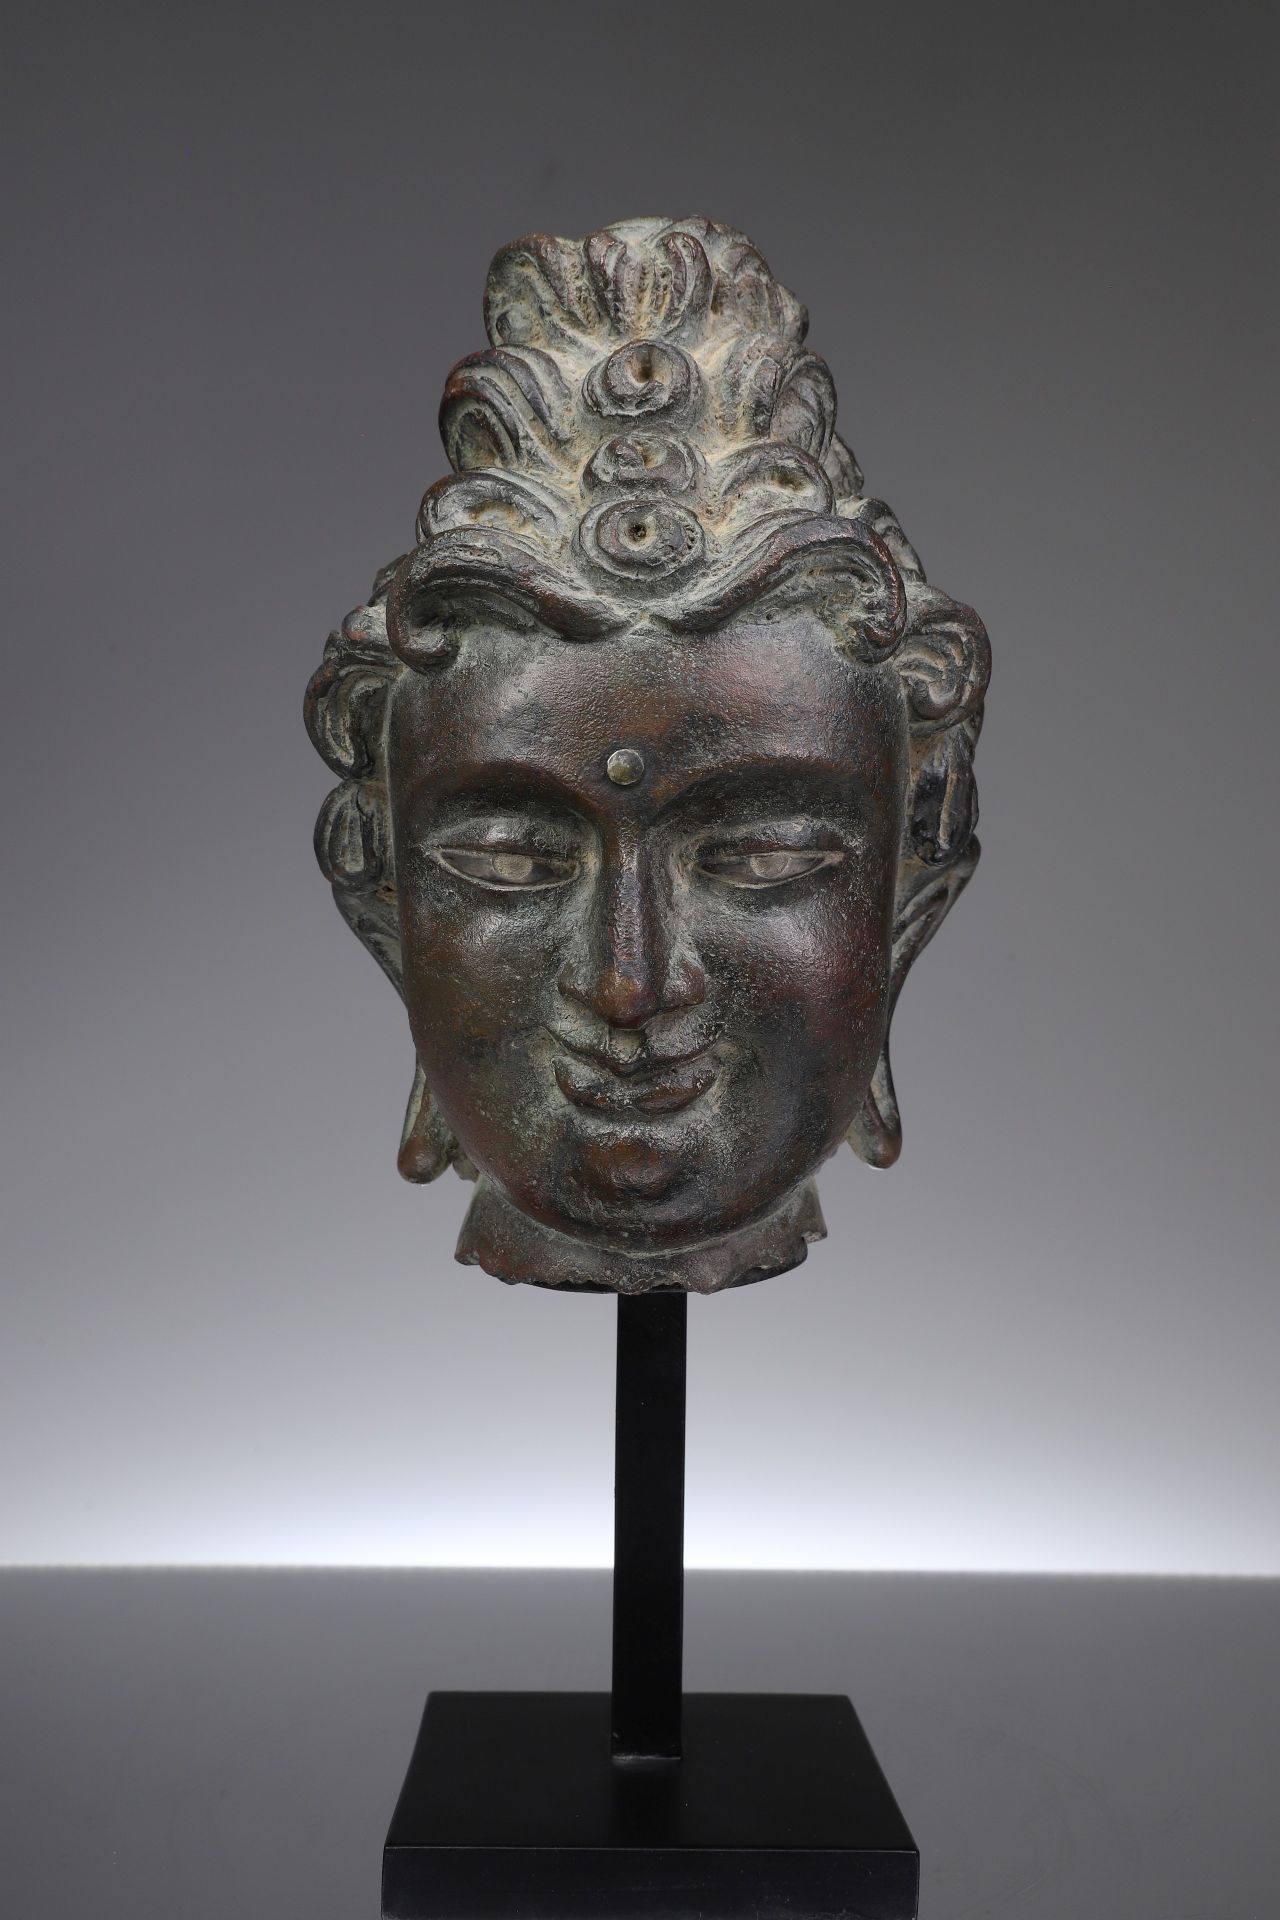 HEAD OF BUDDHA 青铜器，嵌银眼


西藏，18世纪





重量：3959克





尺寸。21 x 12 x 12厘米





佛祖的头像&hellip;